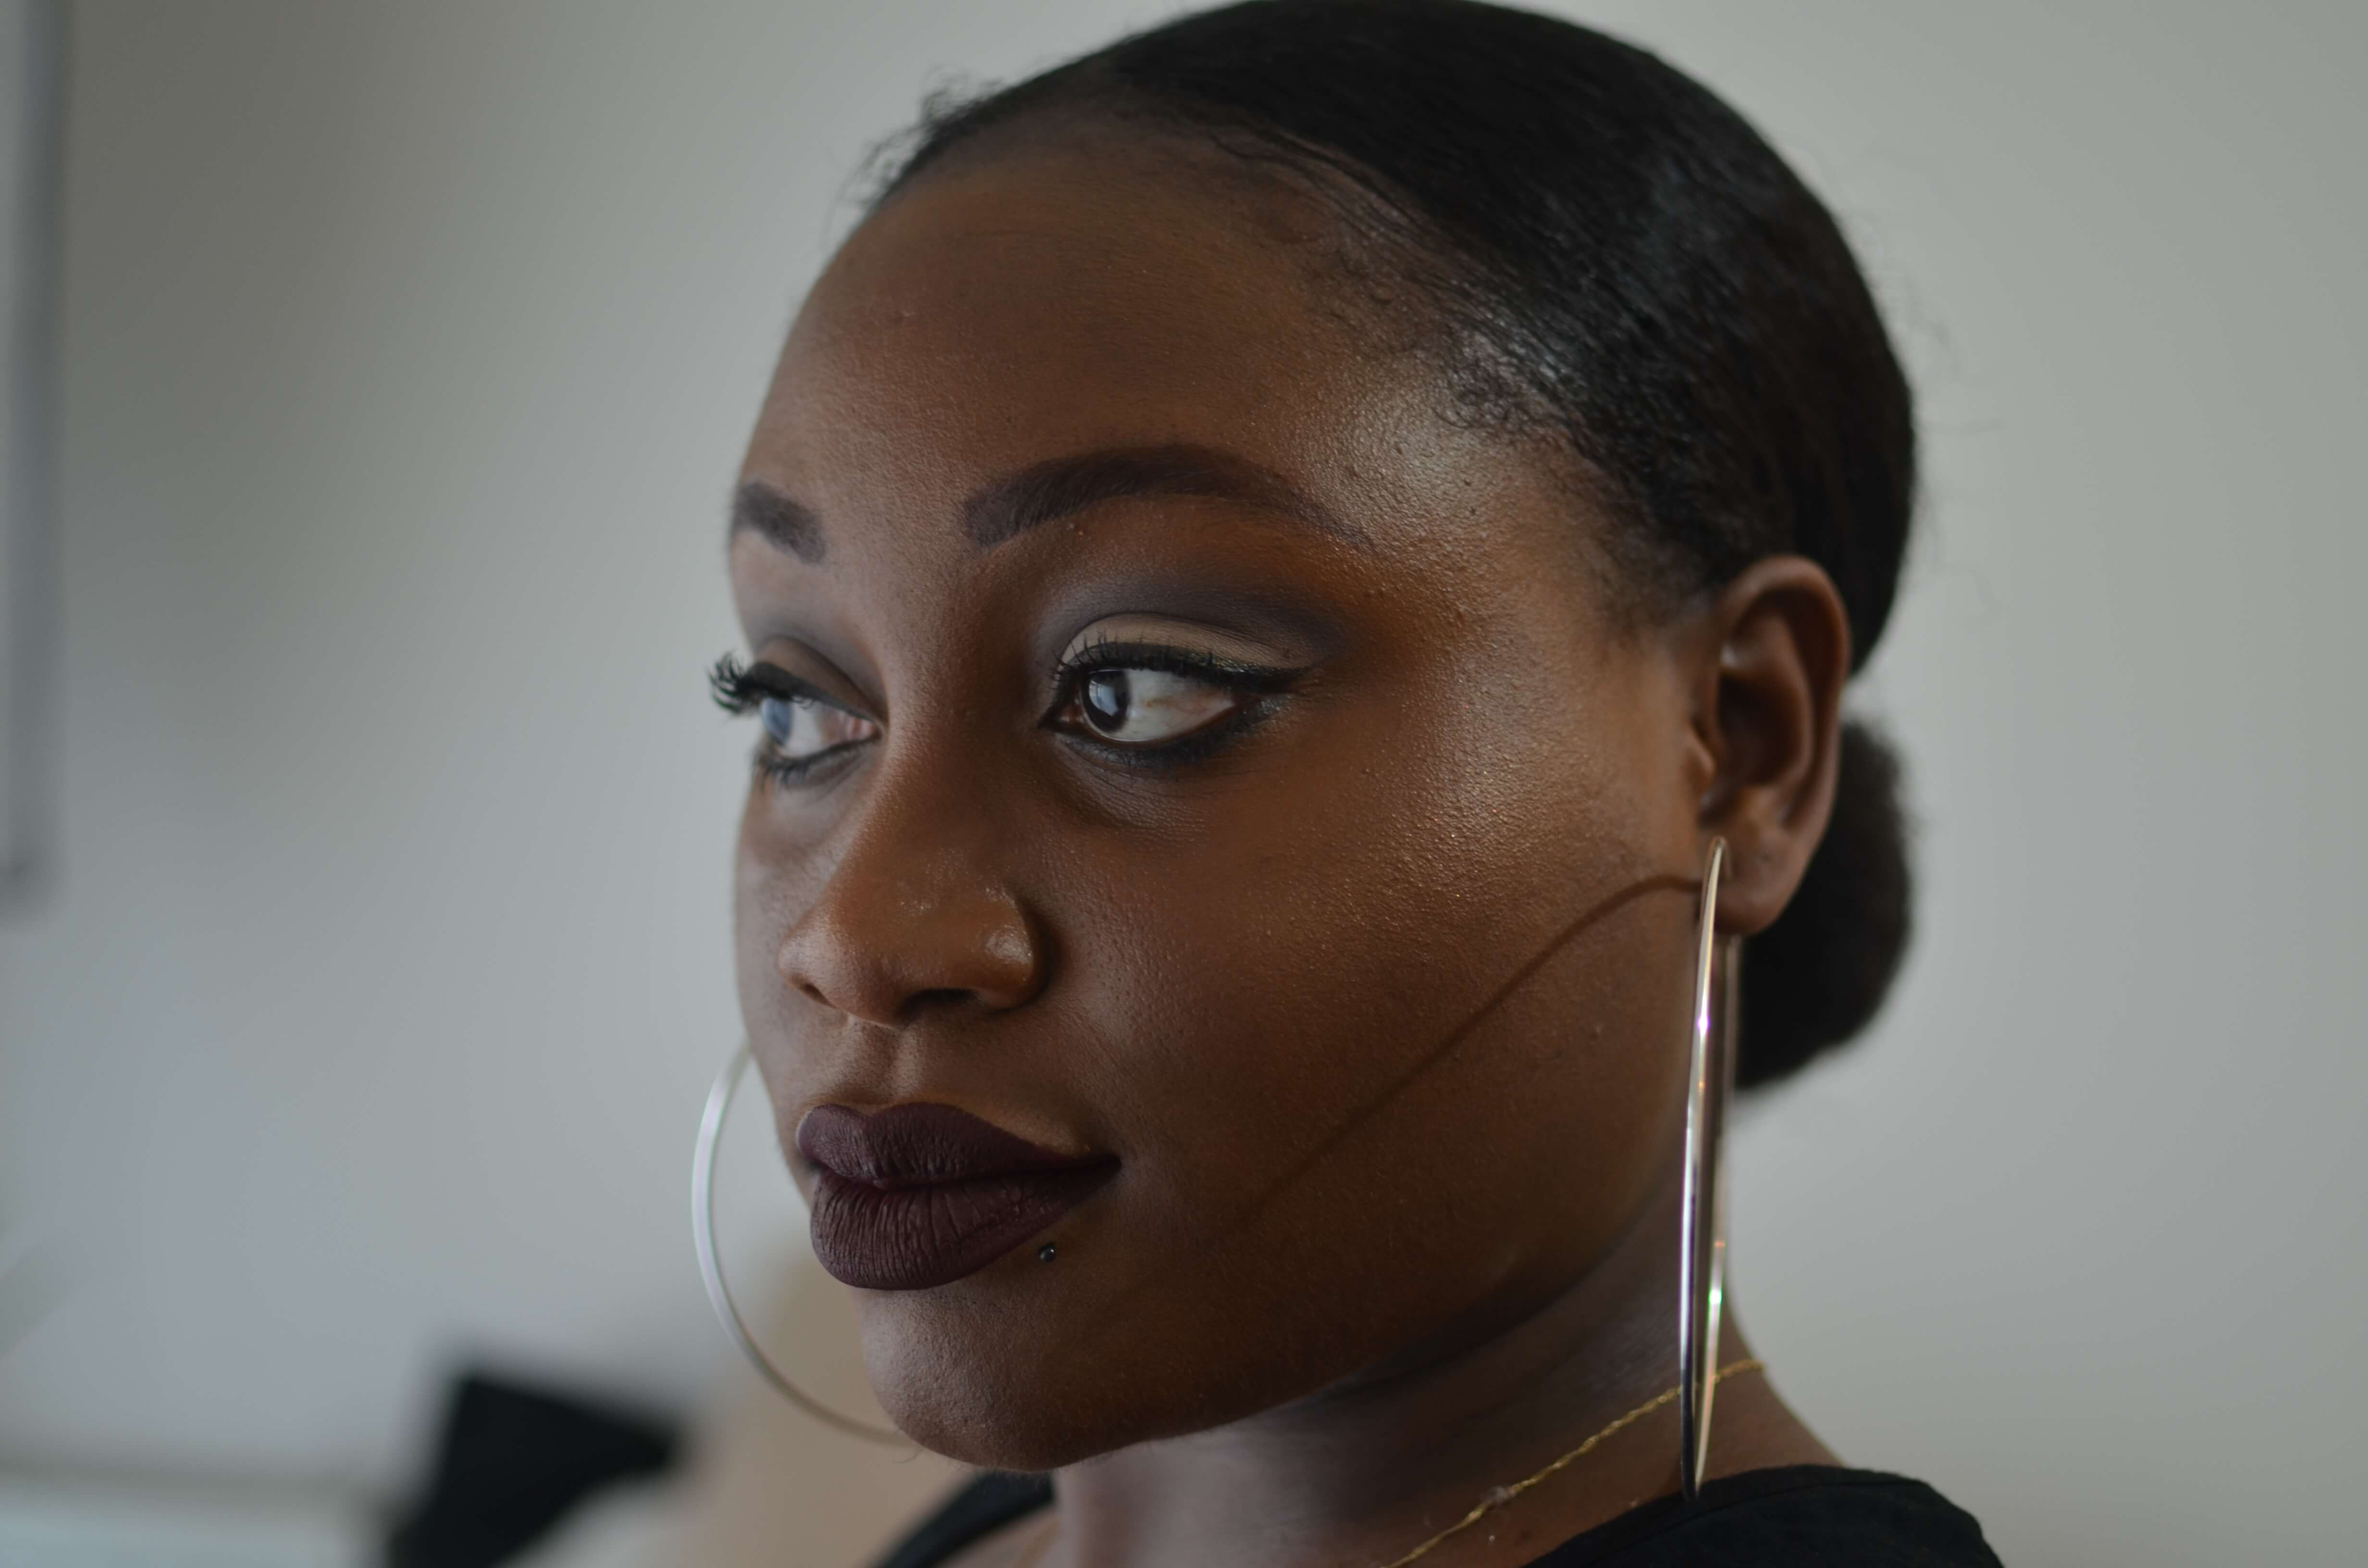 blogo noire et representation de la beauté AFro